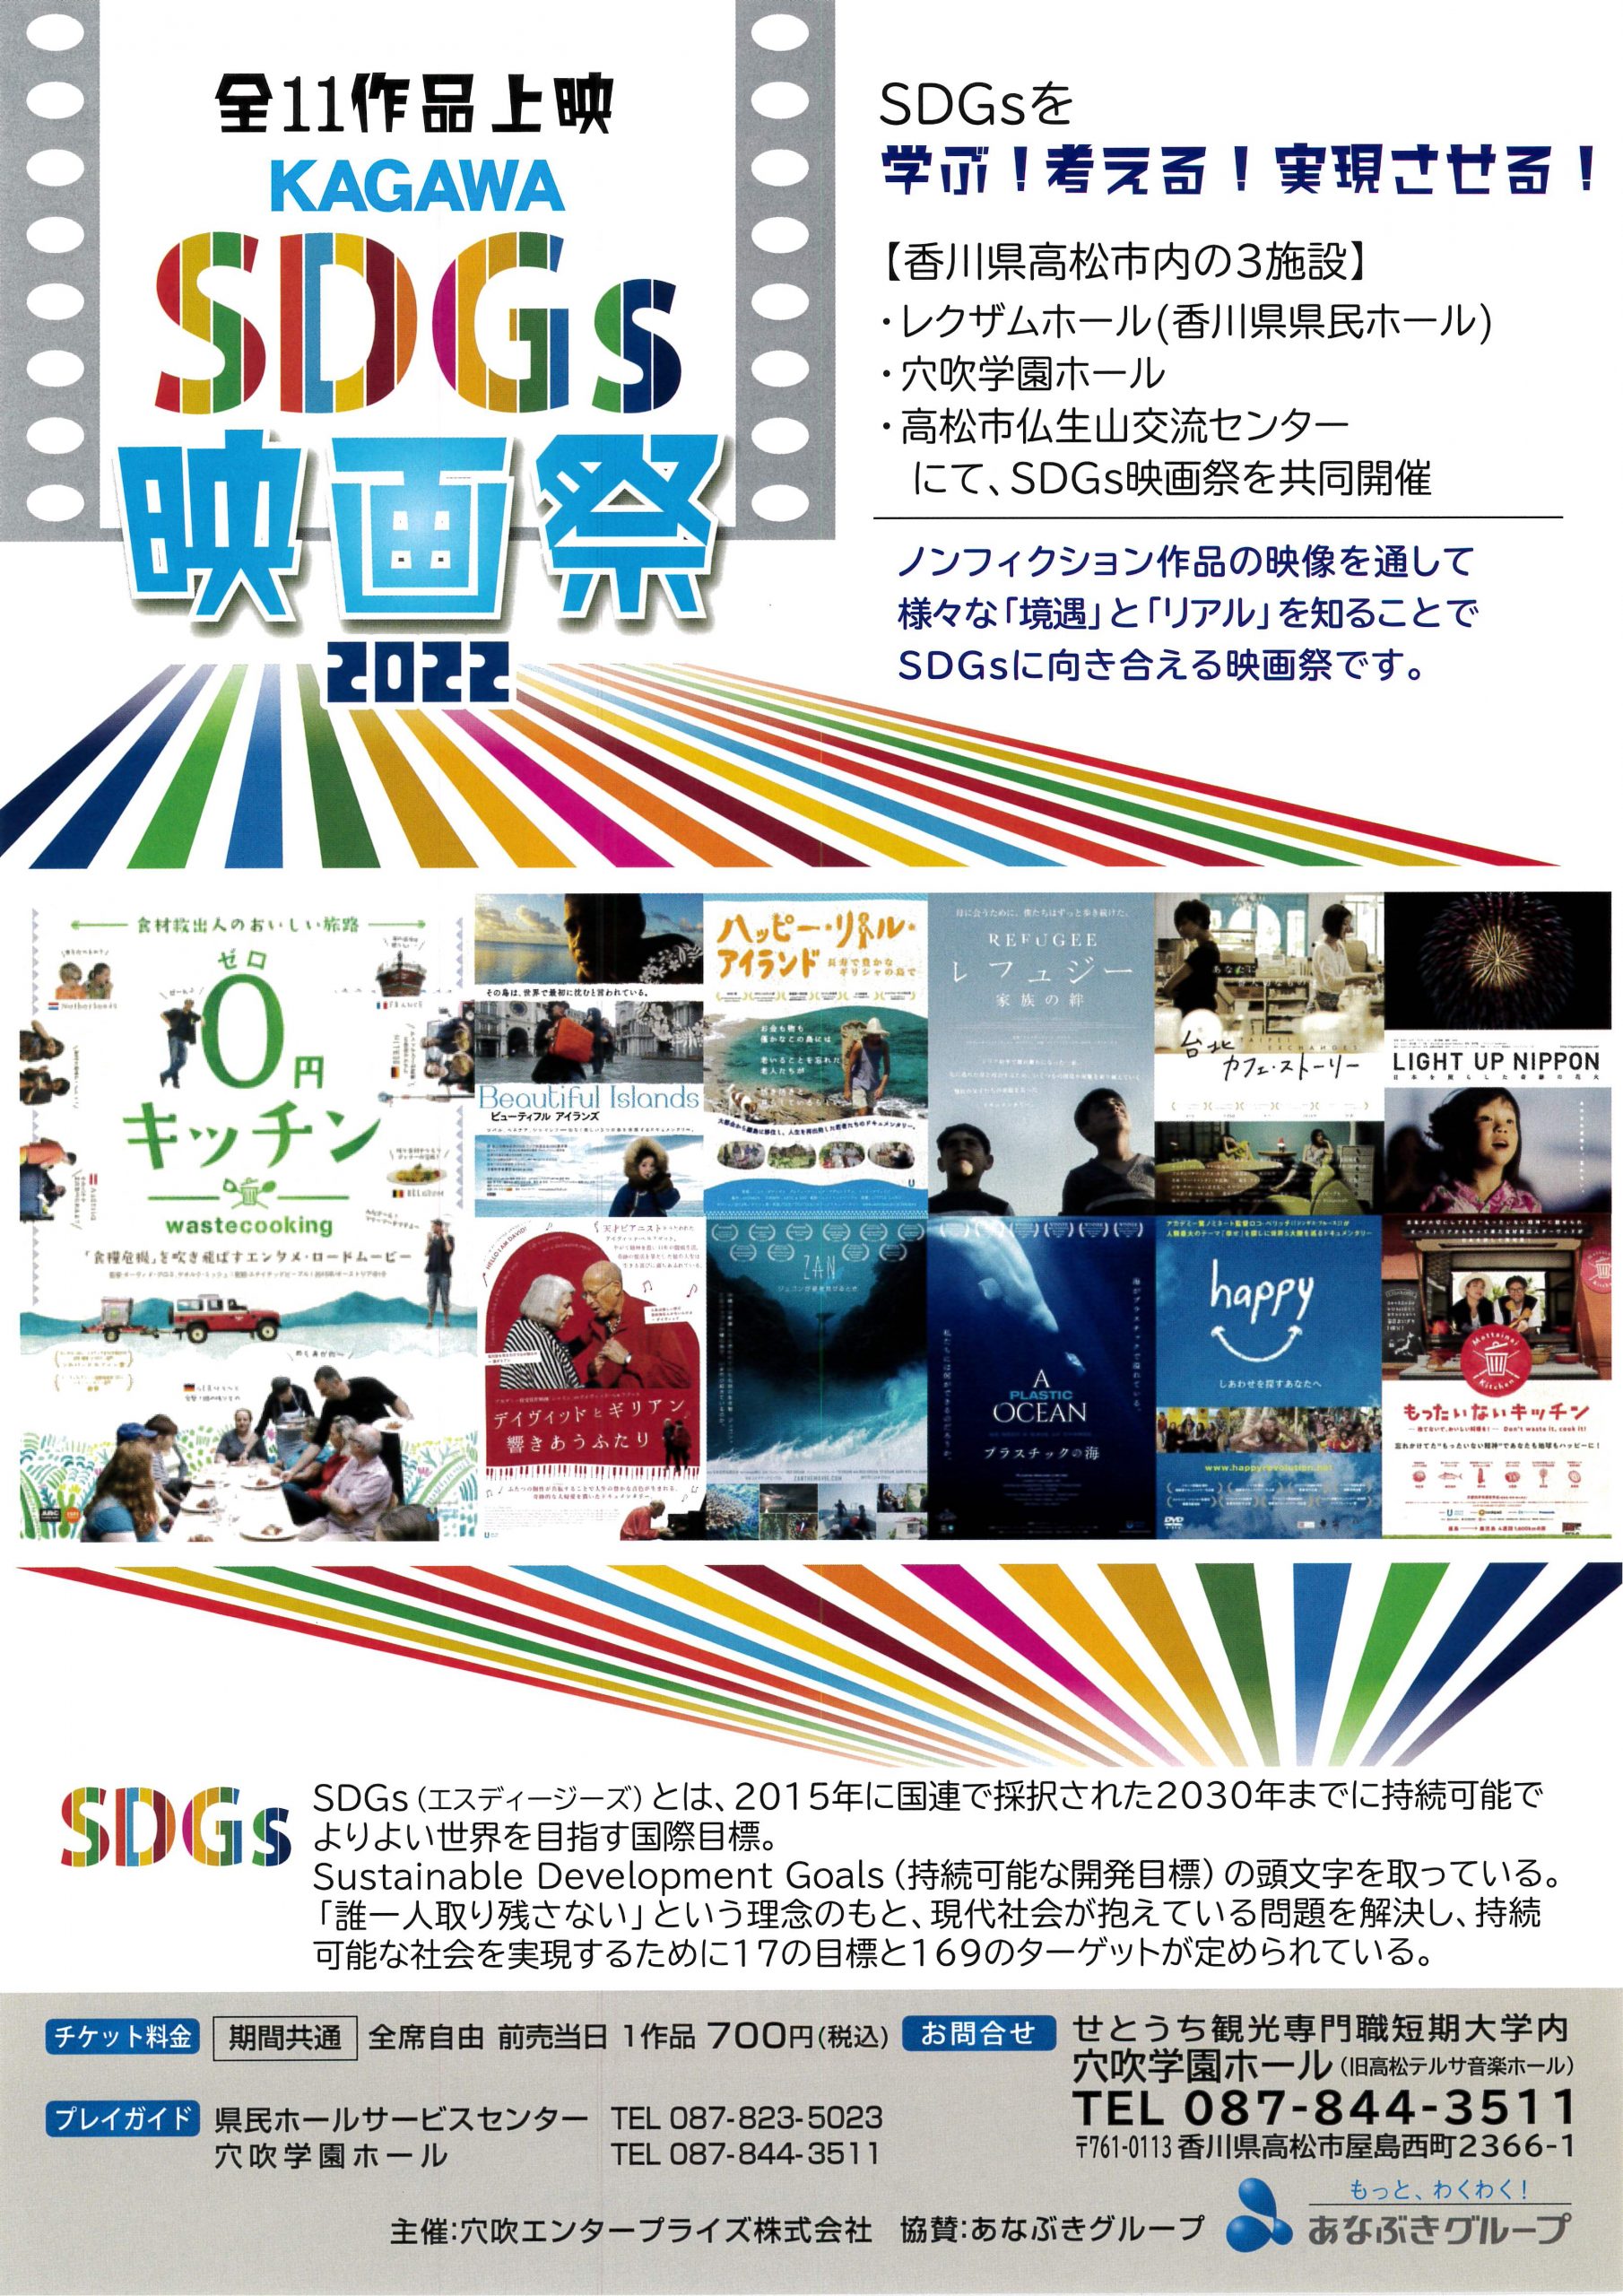 KAGAWA SDG’ｓ映画祭２０２２